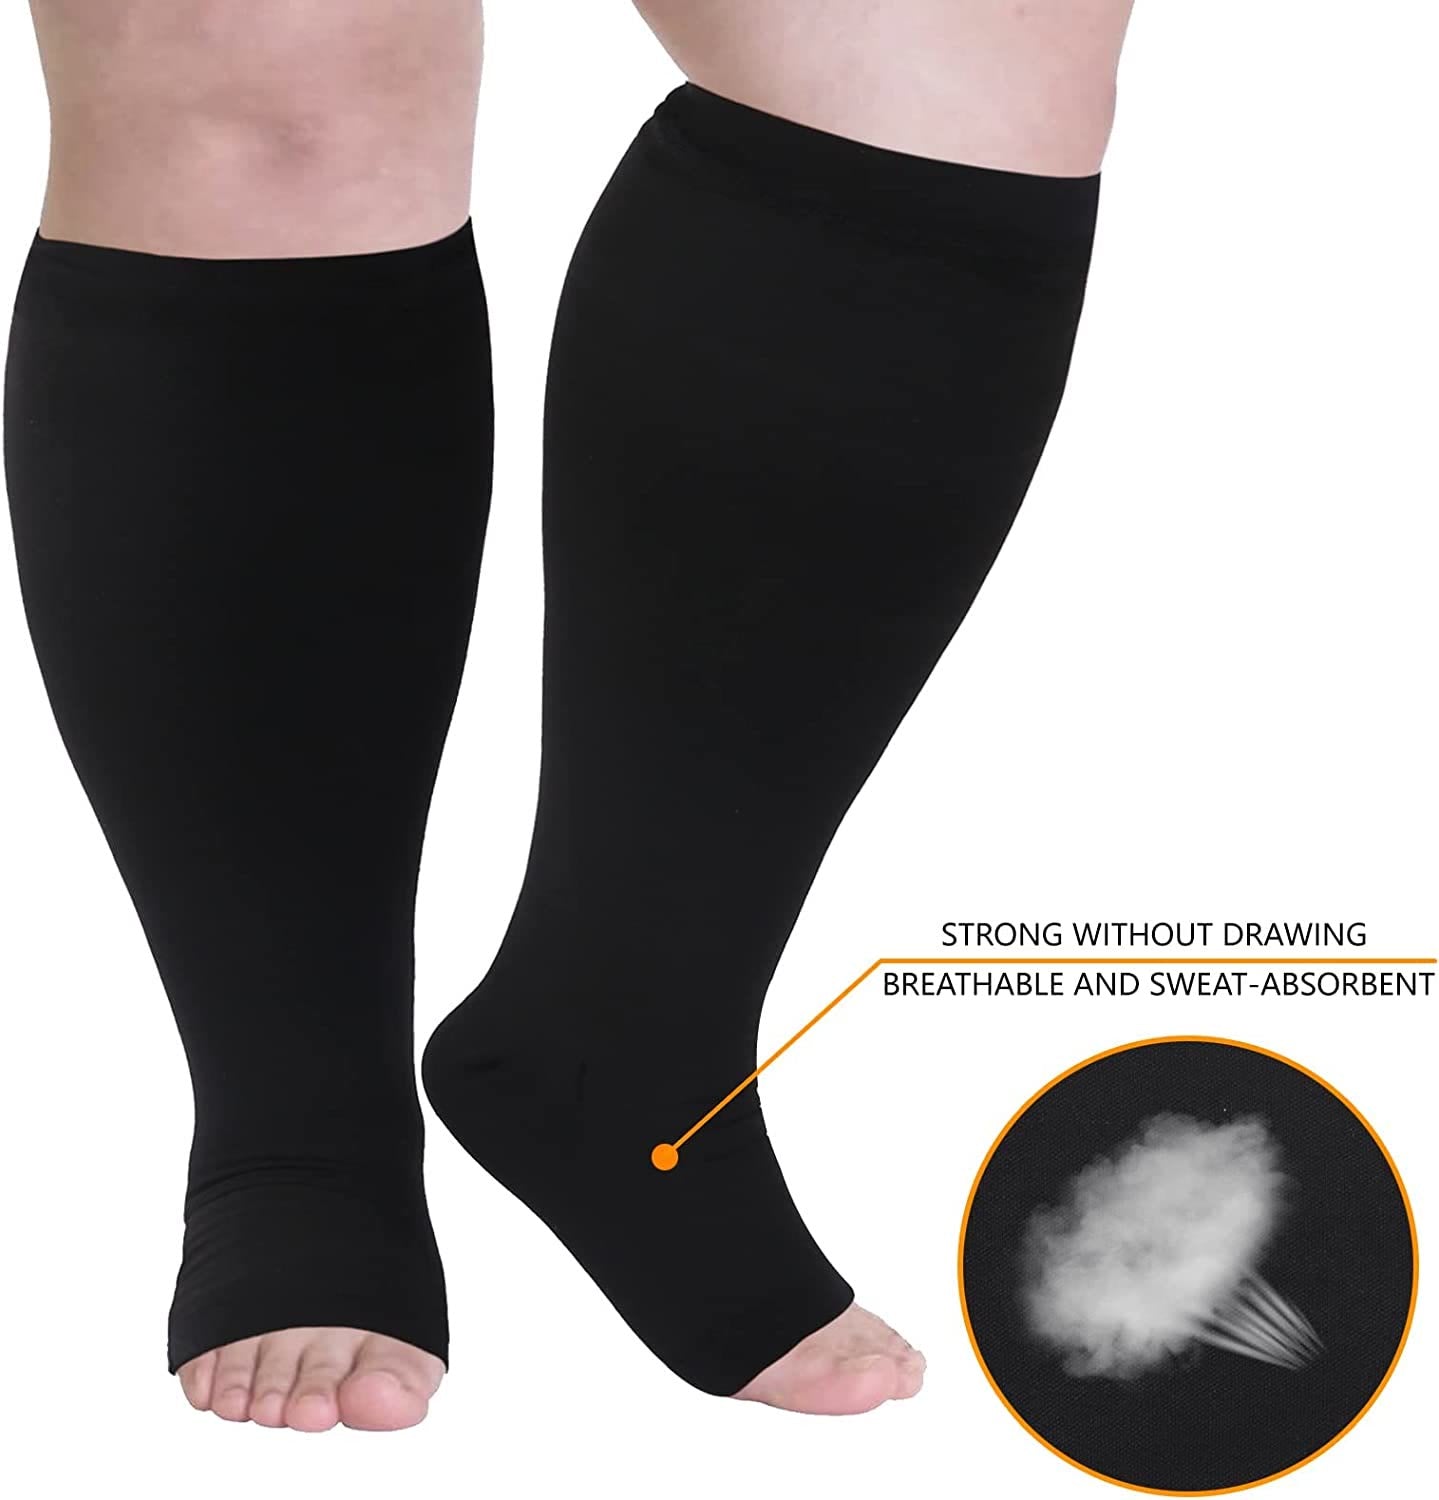 Plus Size Compression Socks Wide Calf Open Toe